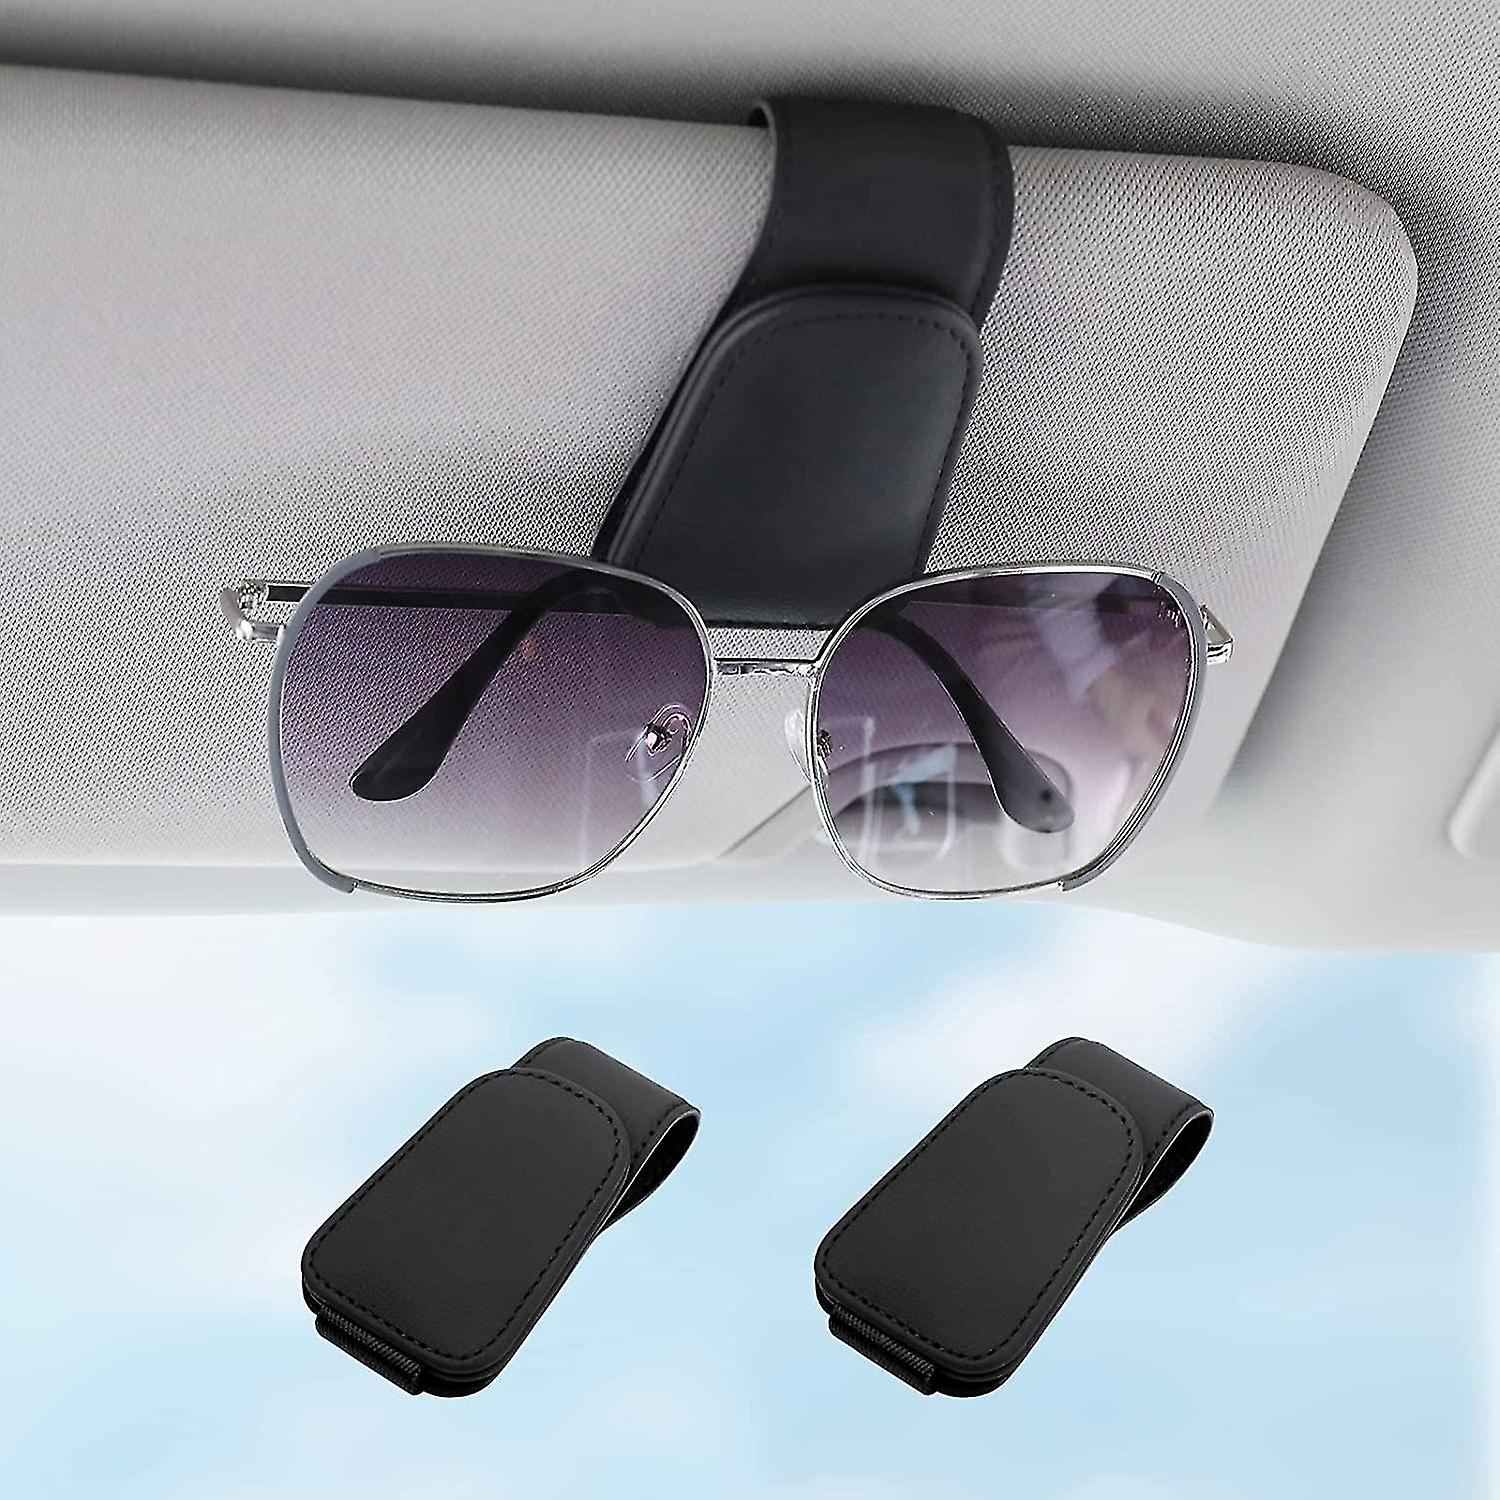 eyeglass holder for car